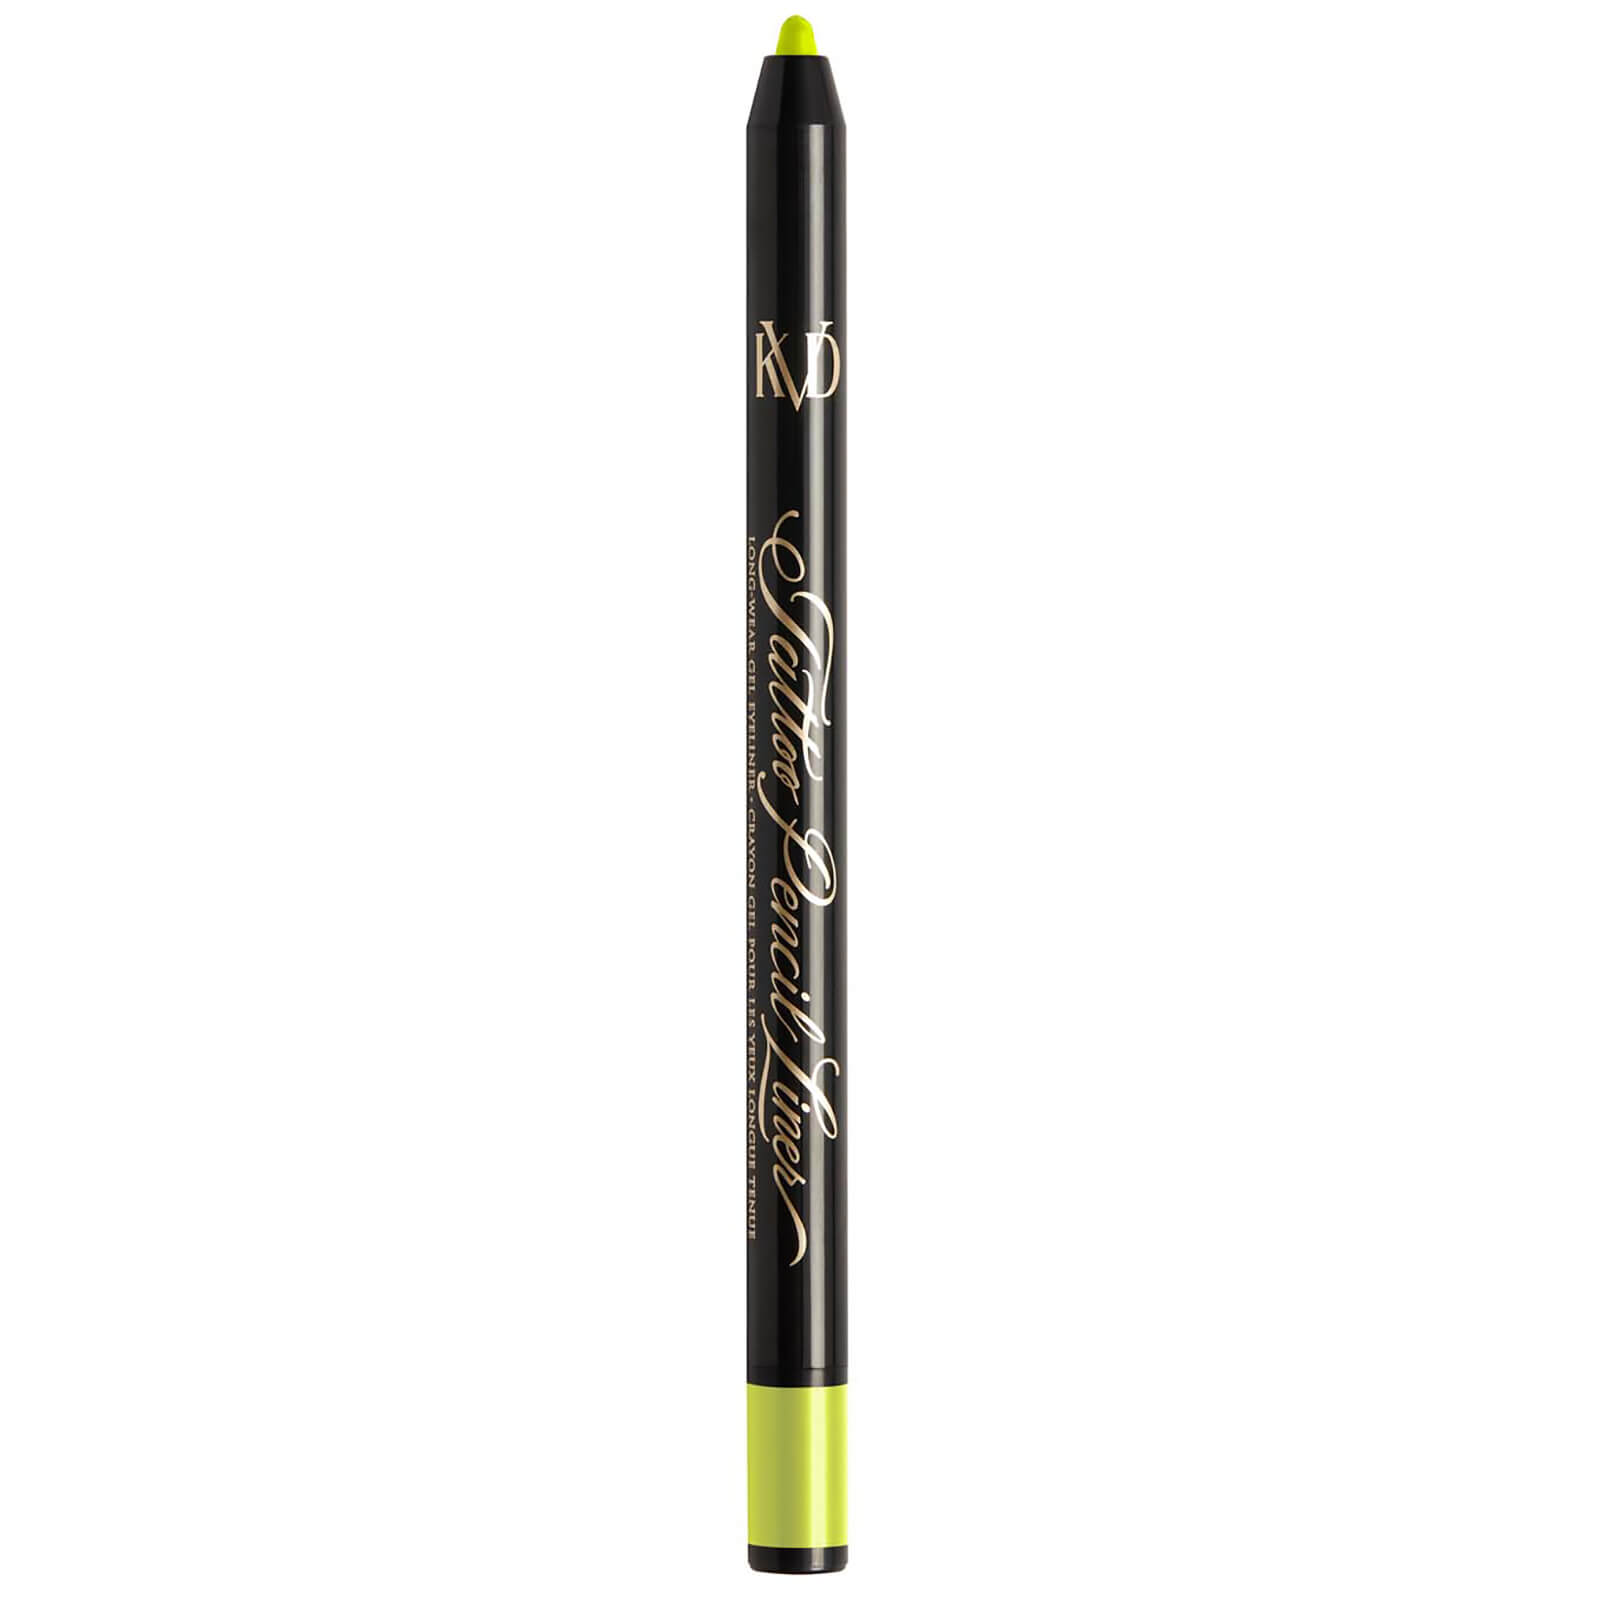 KVD Beauty Tattoo Pencil Liner Long-Wear Gel Eyeliner 0.5g (Various Shades) - Radium Green 130